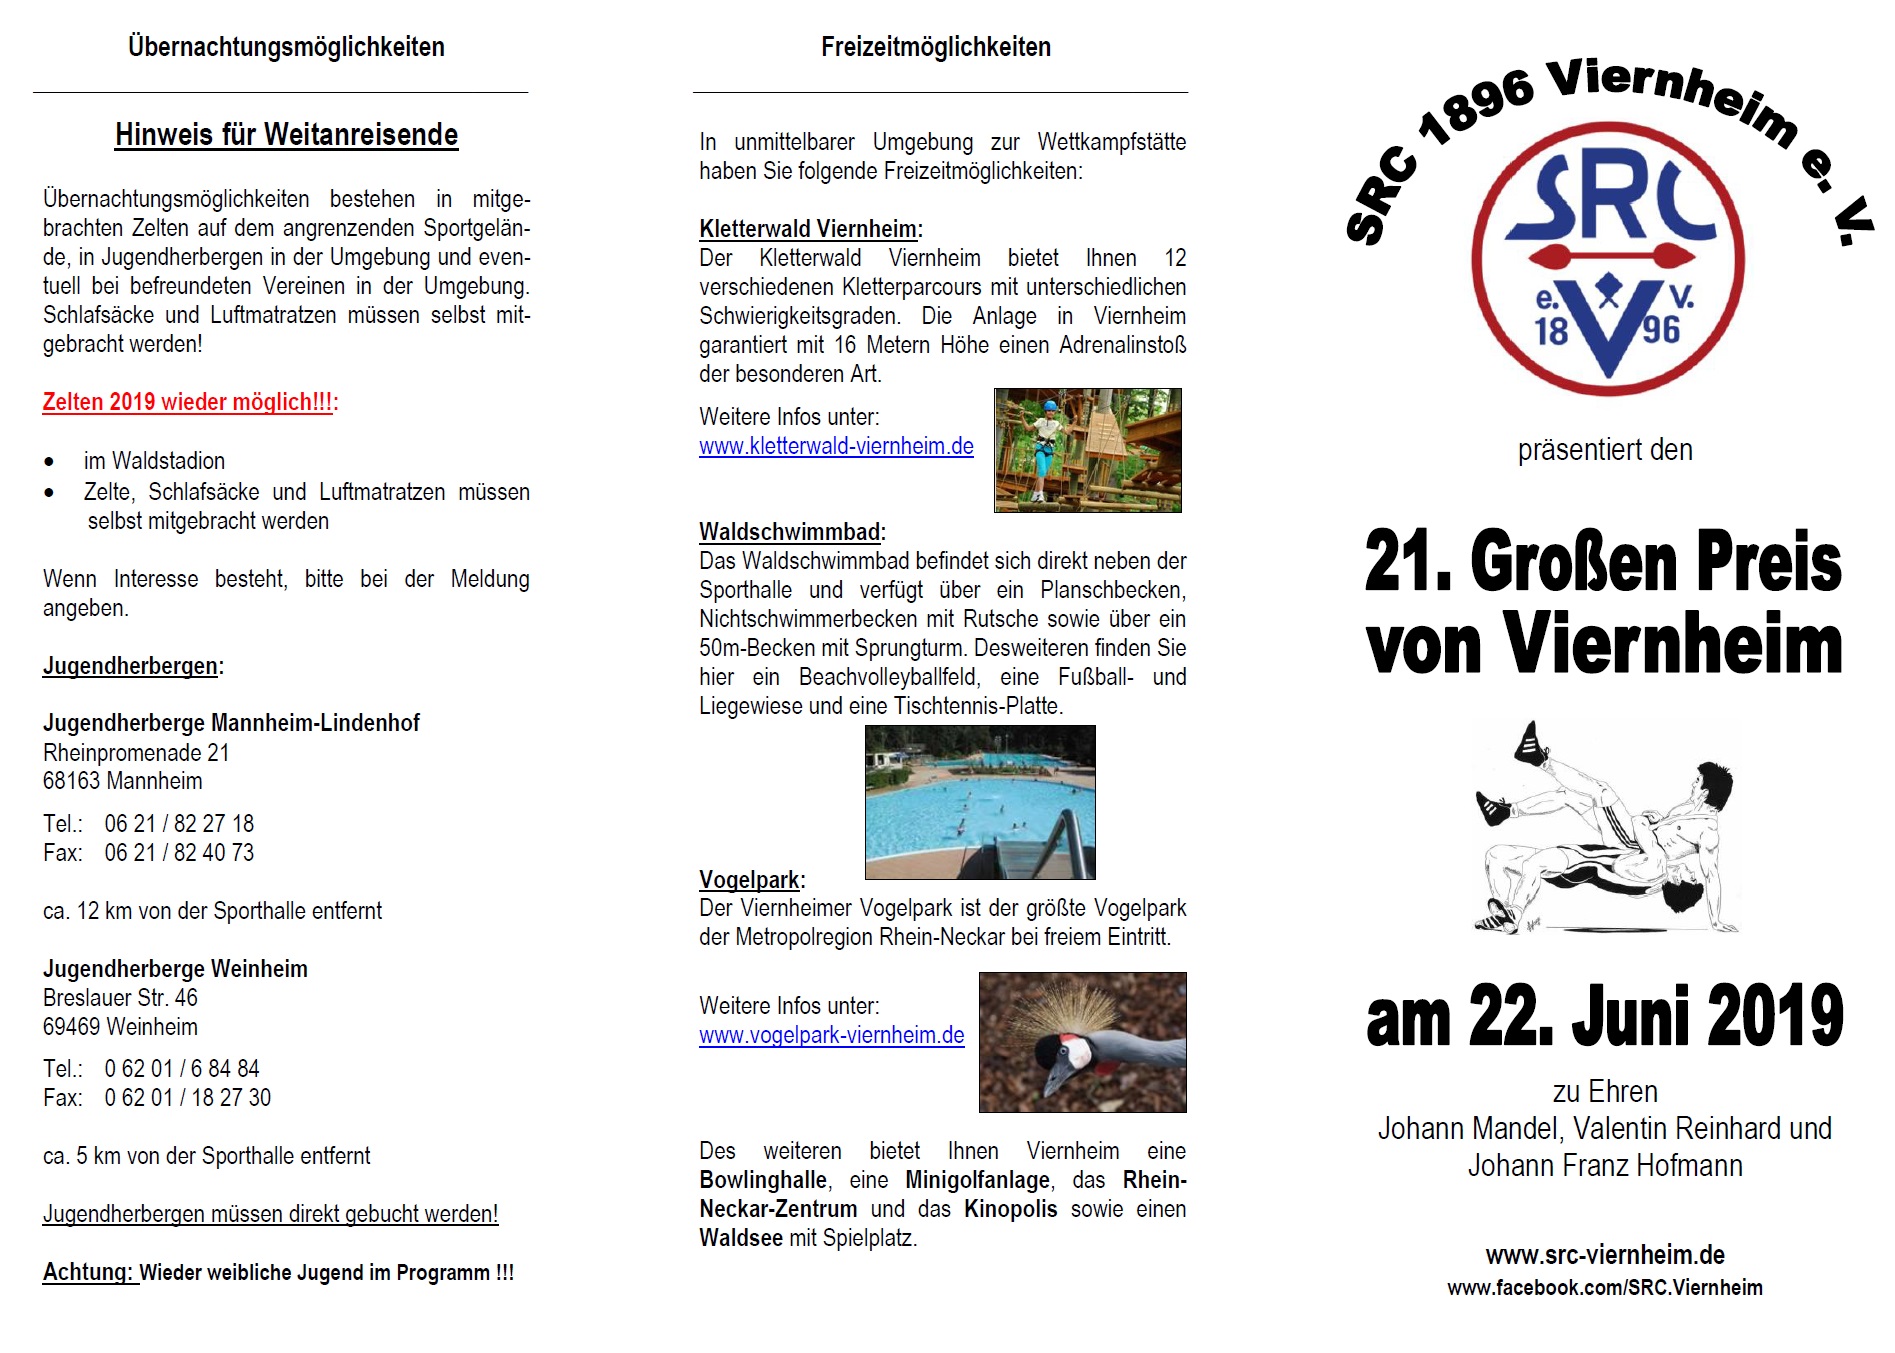 Flyer Großer Preis von Viernheim 2019 Stand 2018.11.21 Seite1